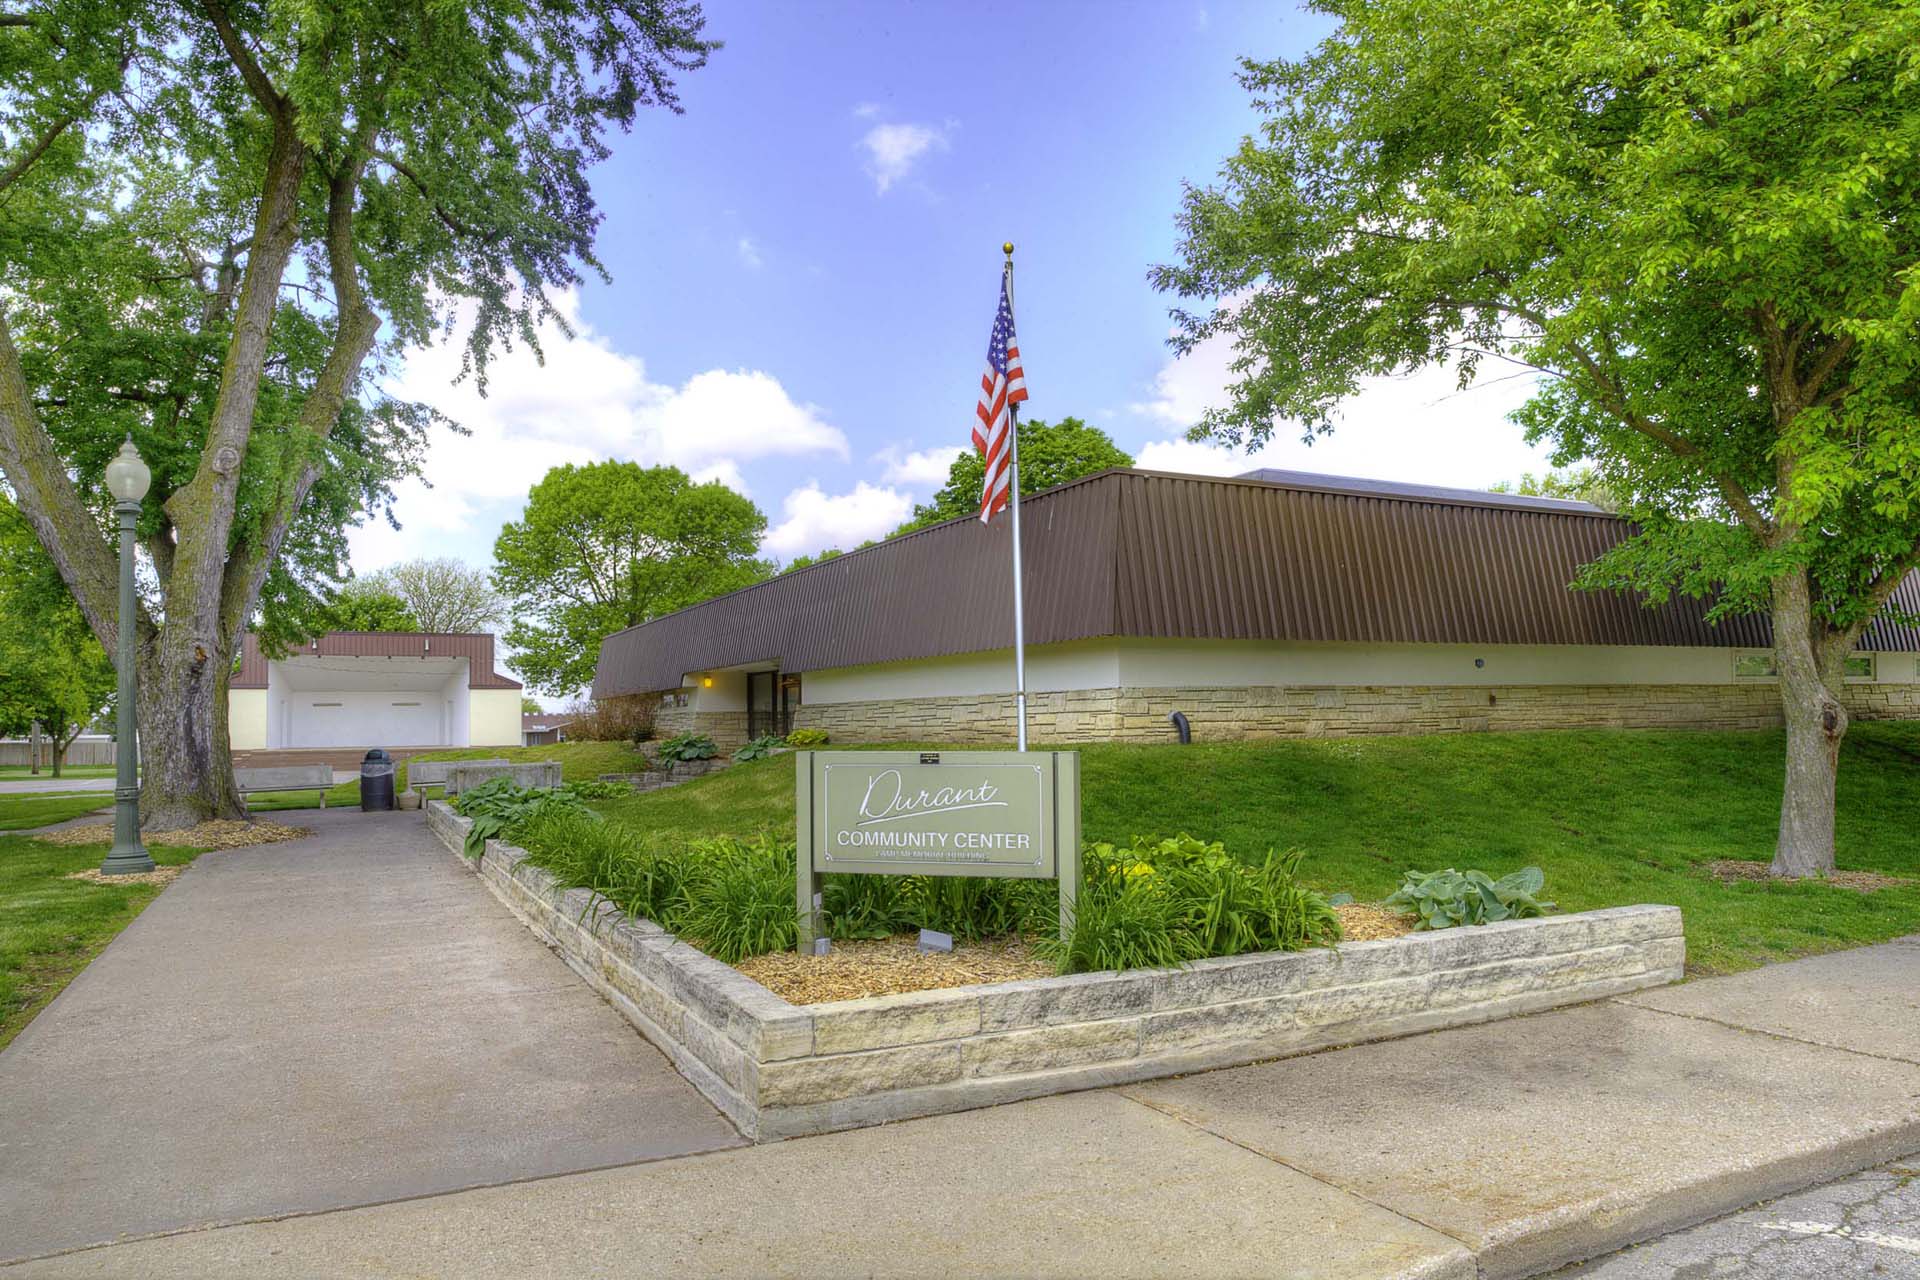 Durant, Iowa Lamp Memorial Community Center